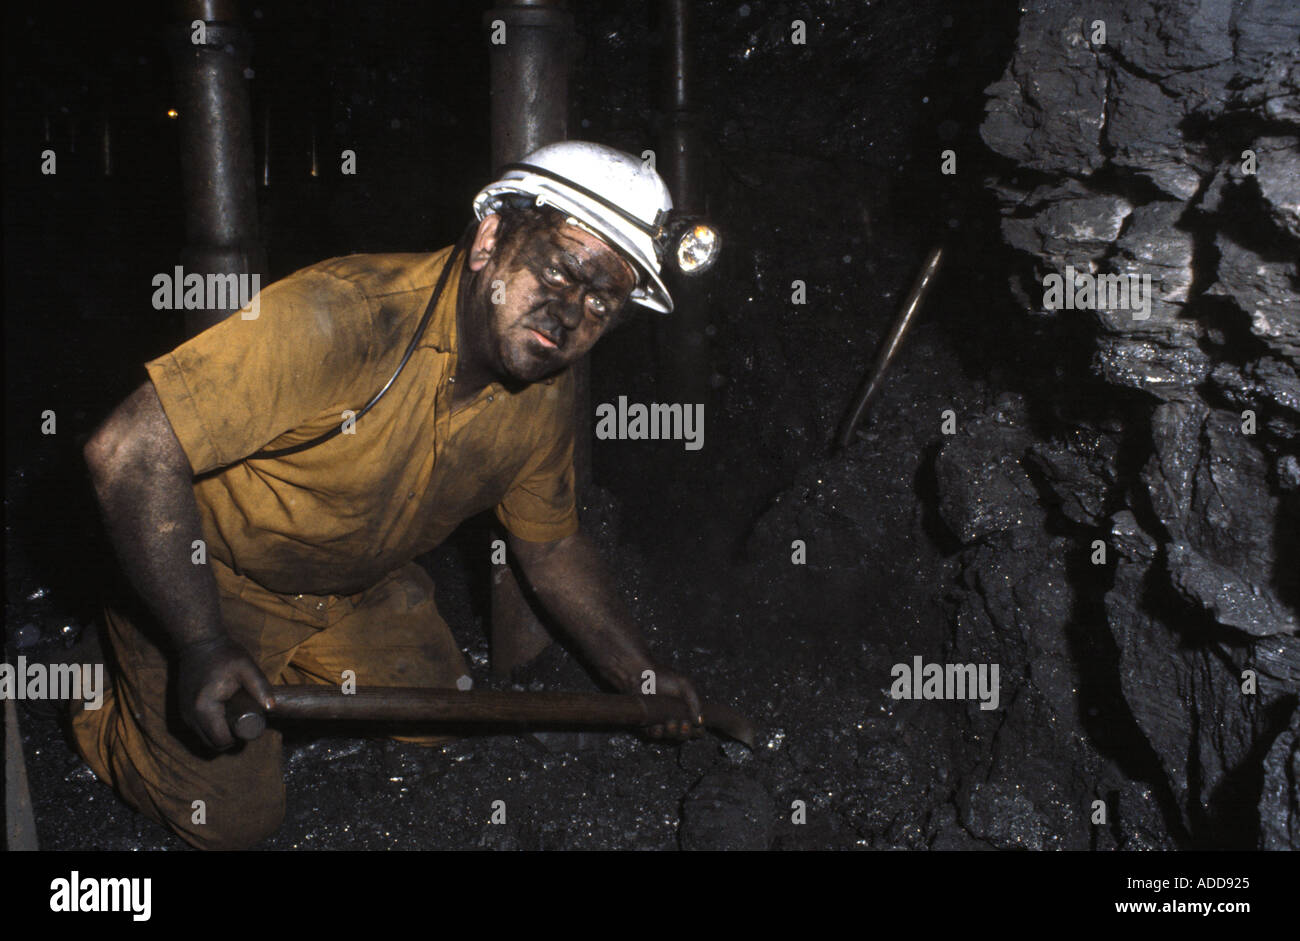 modern underground coal mine